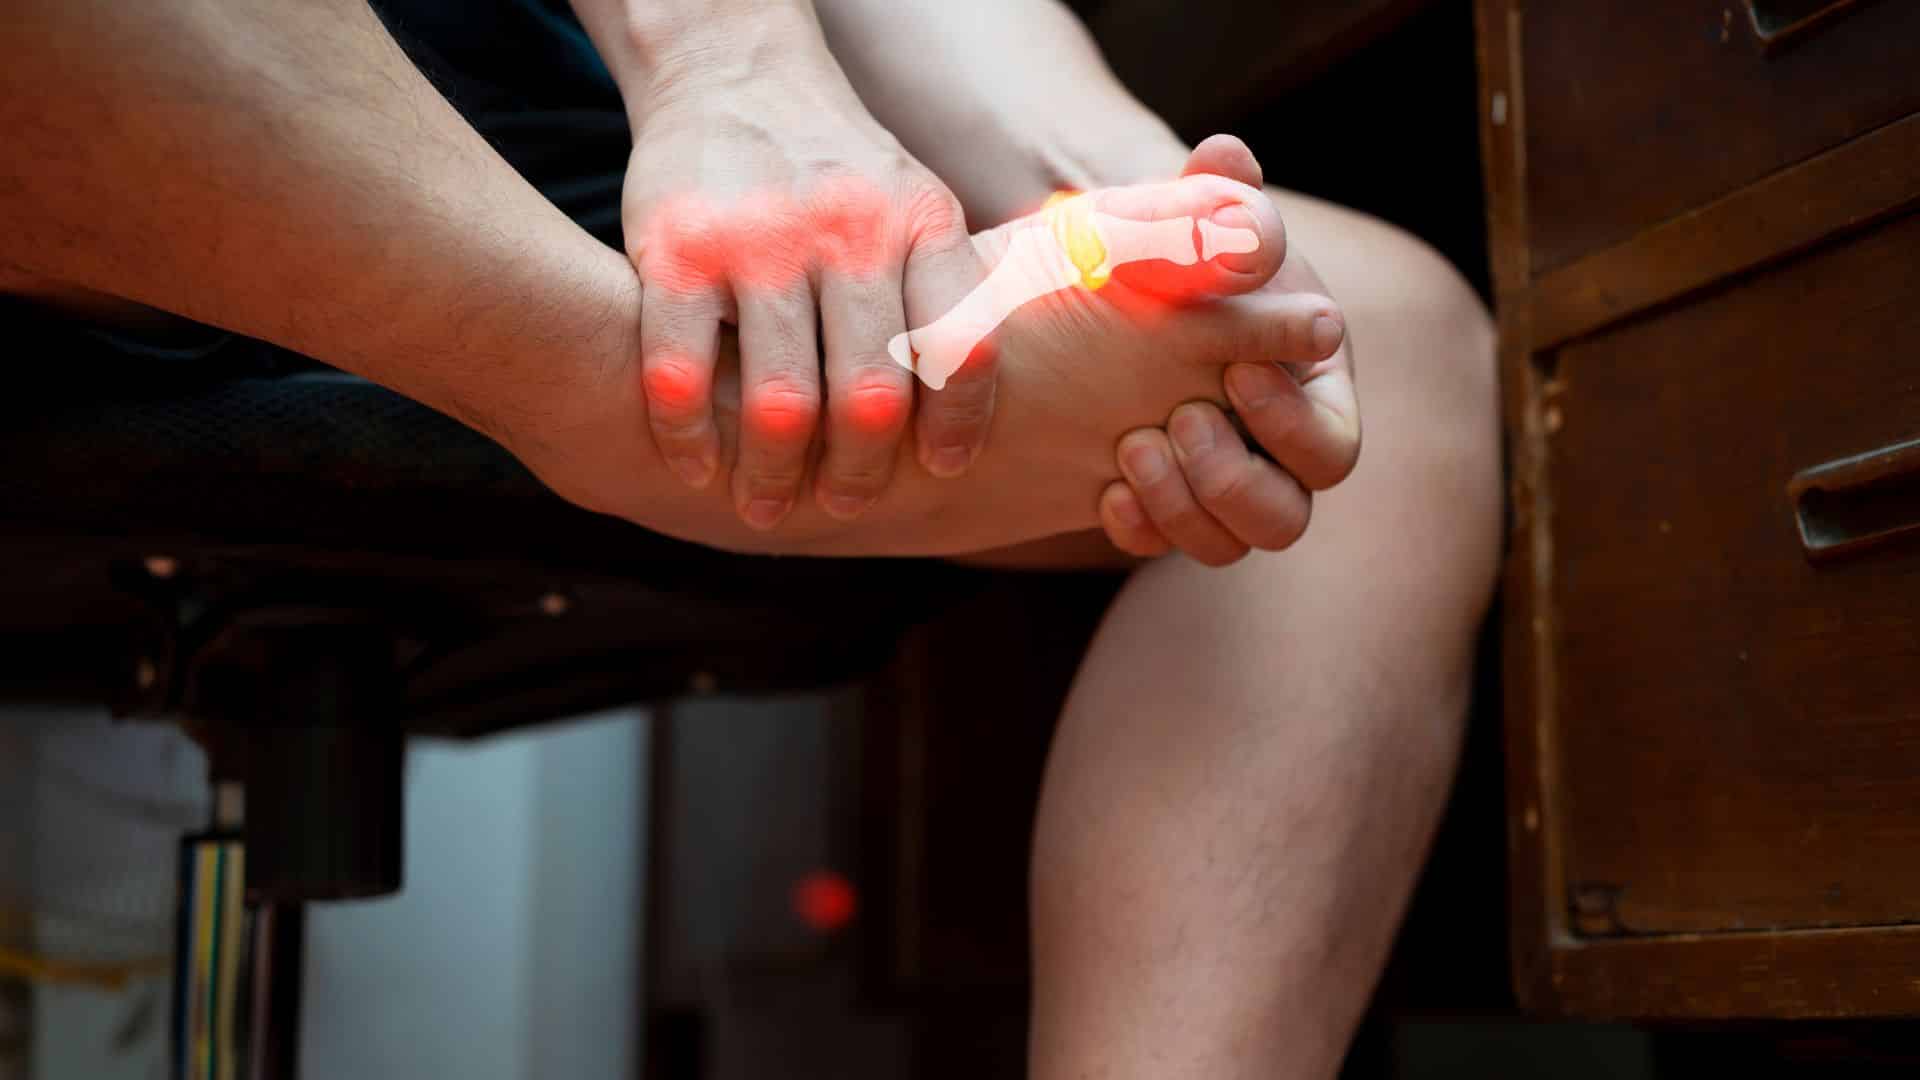 Foot and Leg Injuries